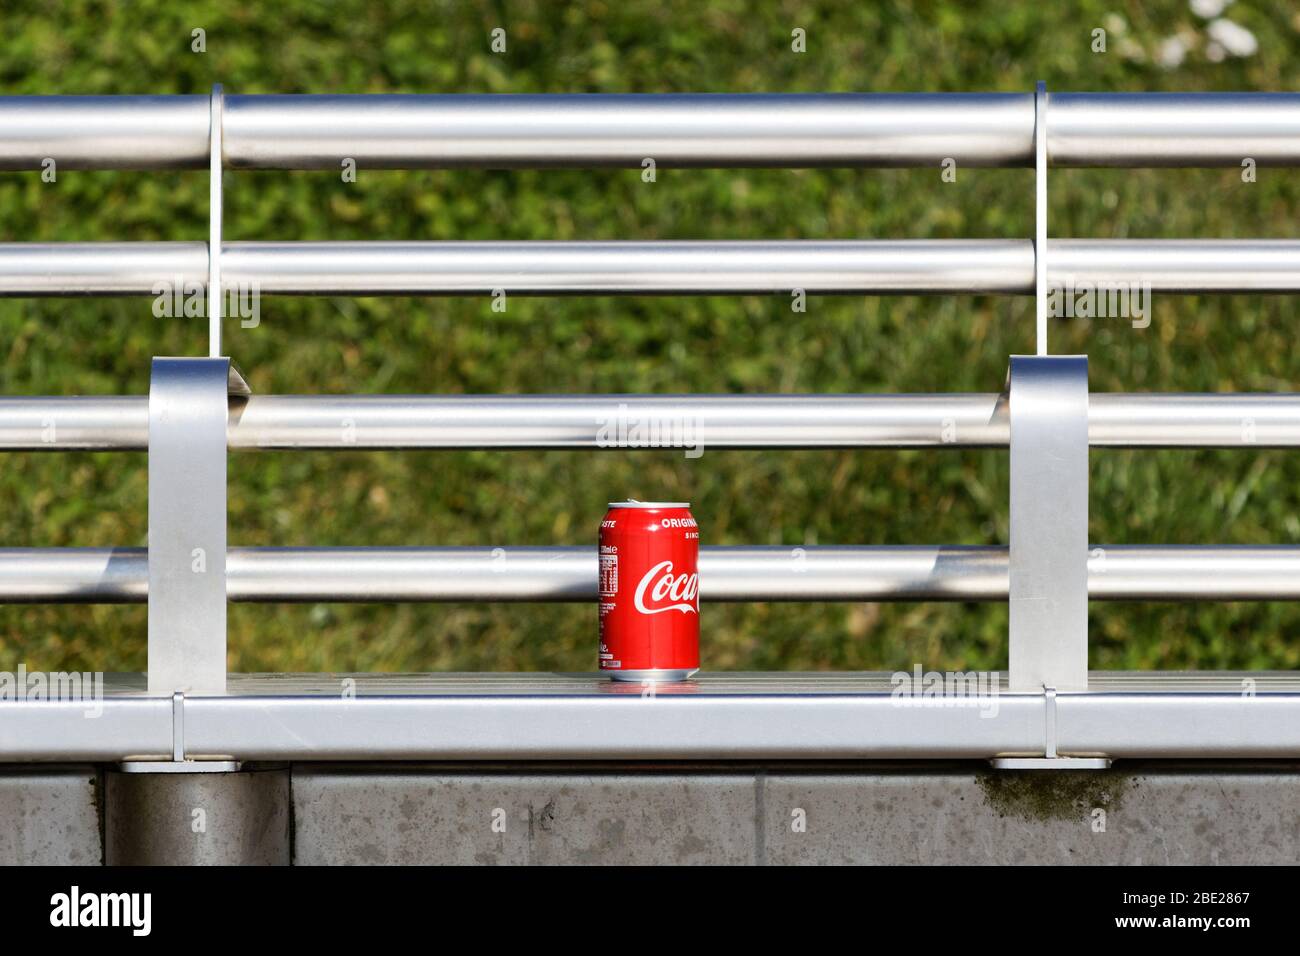 Une canette vide de Coca-Cola sur un banc d'alluminium à l'algue, Swansea, Pays de Galles, Royaume-Uni. Jeudi 26 mars 2020 Banque D'Images